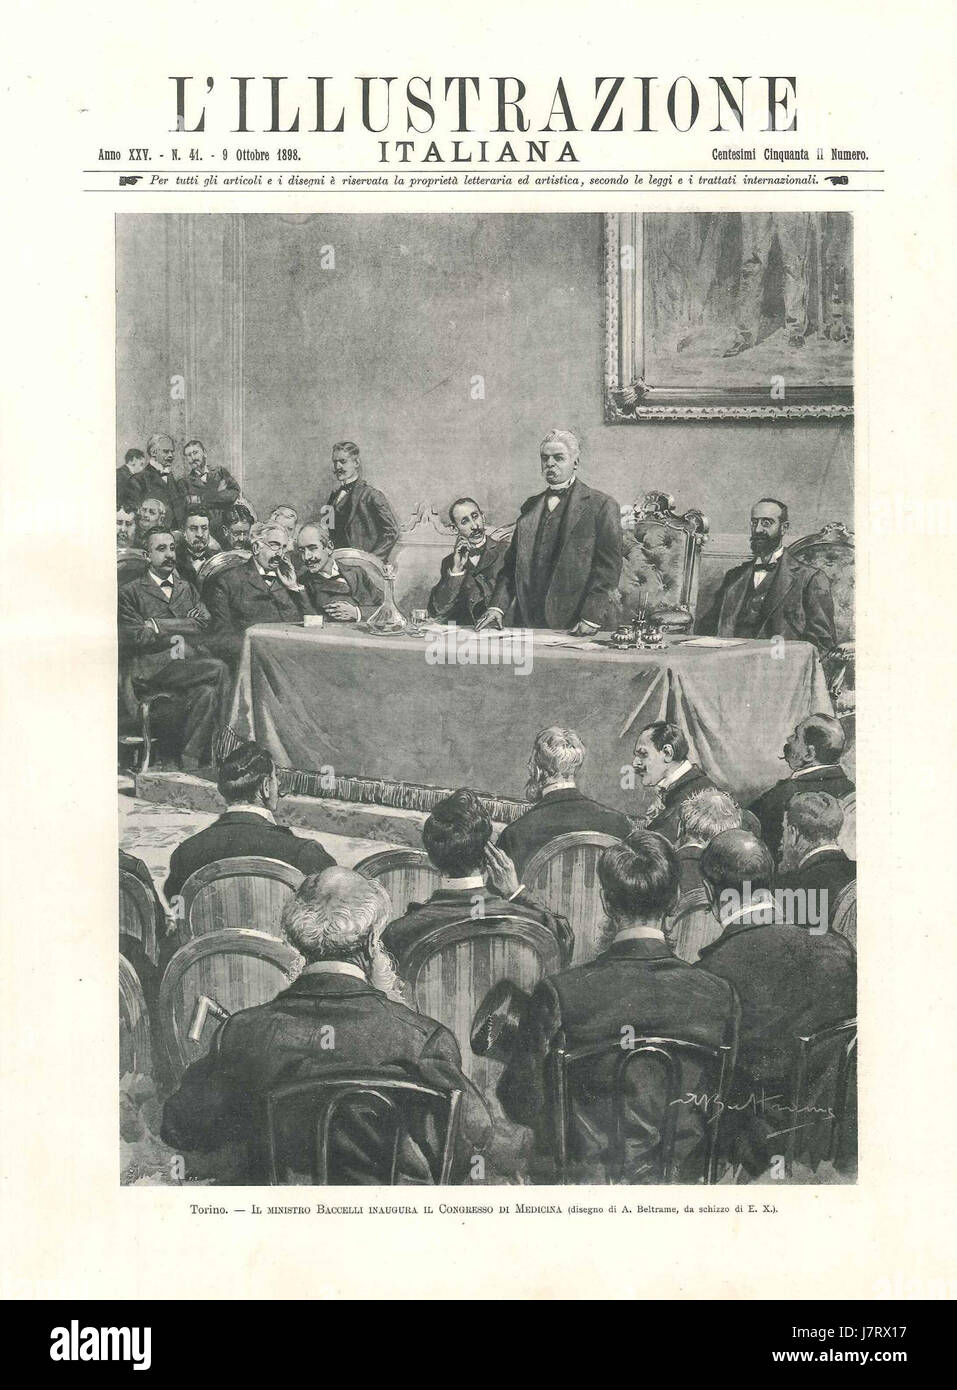 Baccelli inaugura il Congresso di Medicina di Torino, L'illustrazione italiana, 1898 Banque D'Images